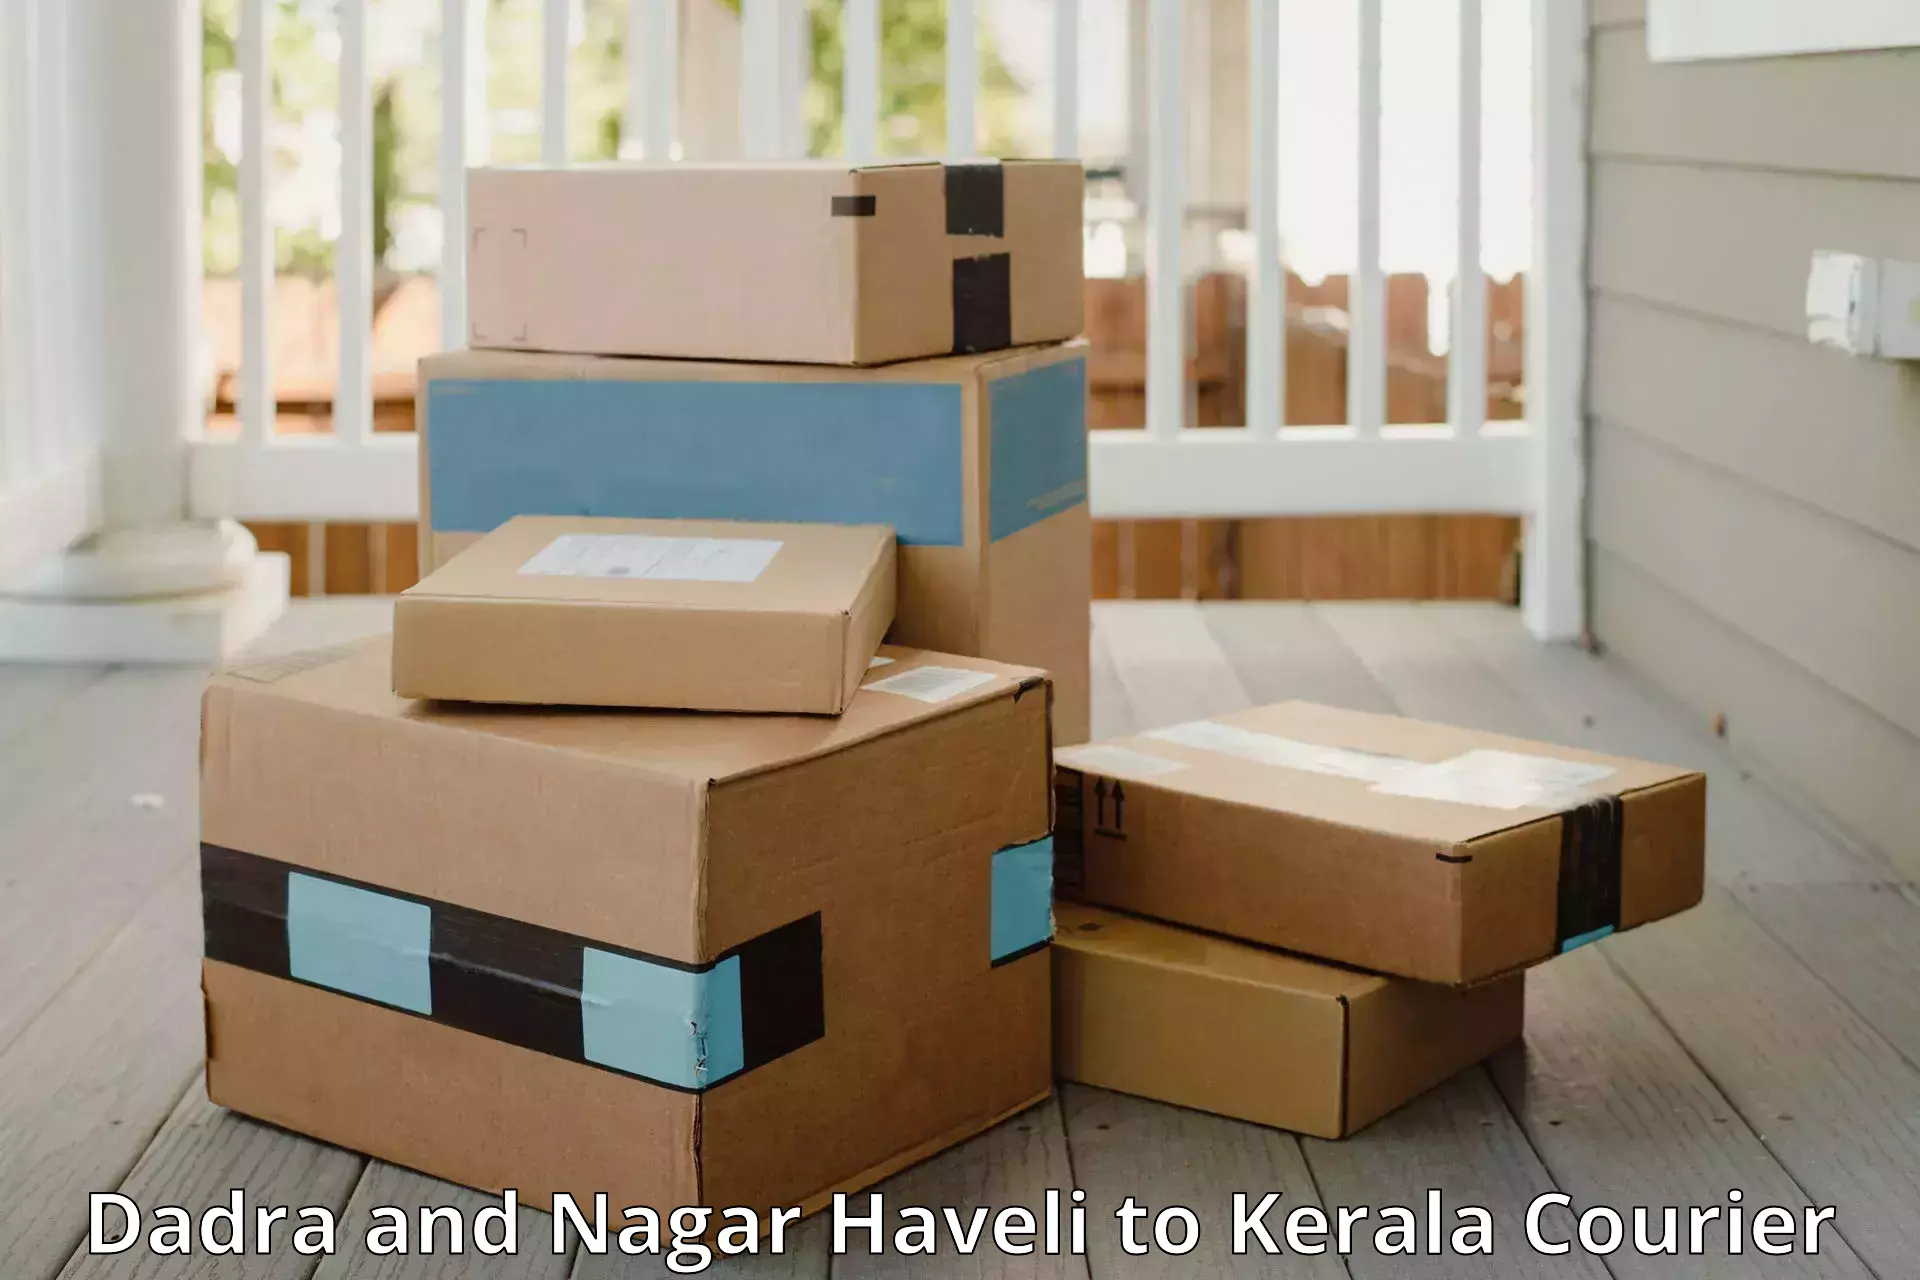 Luggage dispatch service Dadra and Nagar Haveli to Thiruvananthapuram